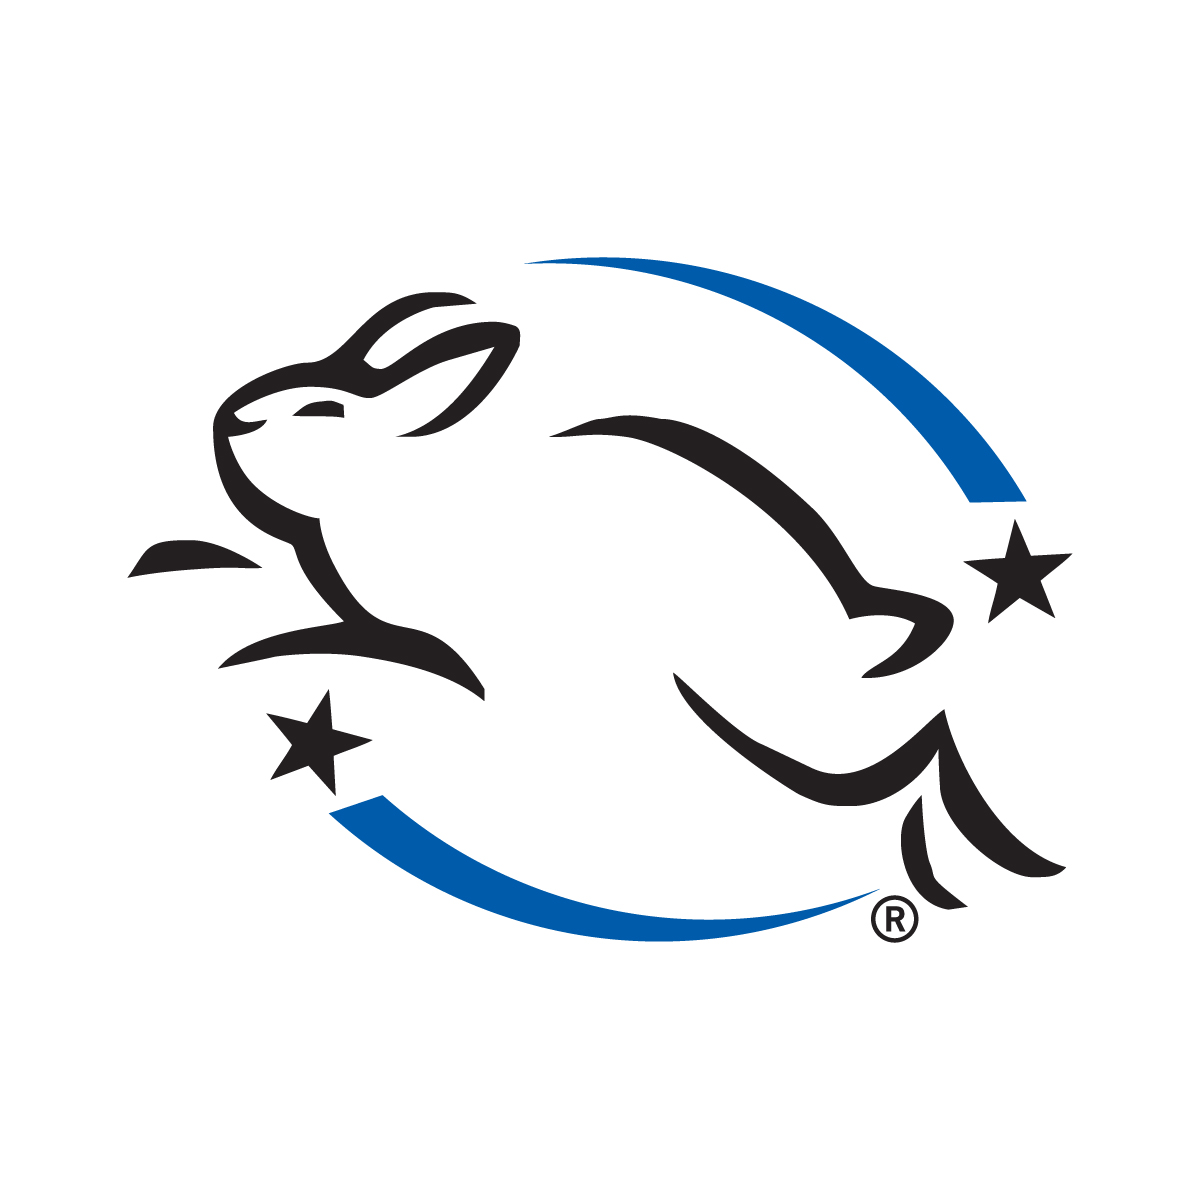 logo mỹ phẩm thuần chay leaping bunny